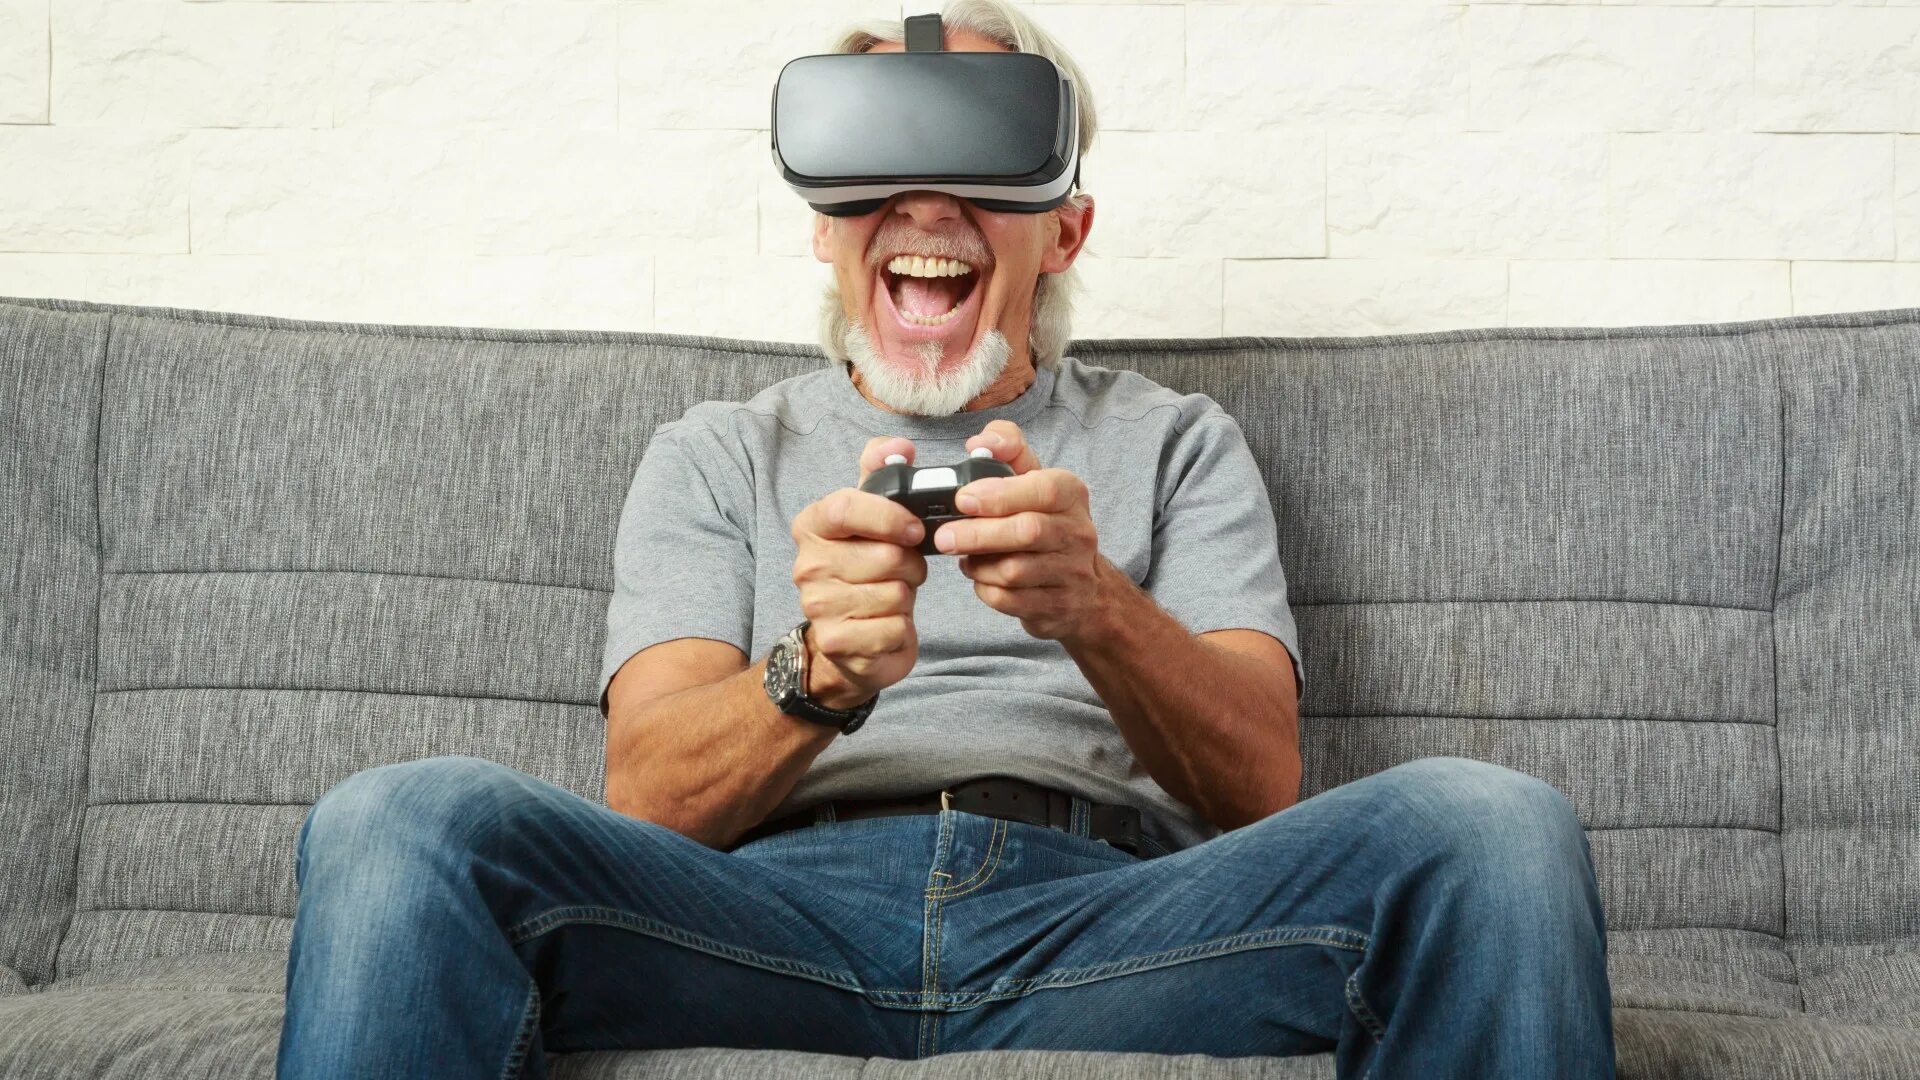 Over 3 million. Человек на диване играет. Игры на диване. Человек на стуле в VR. Мужчина в виртуальных очках на диване.